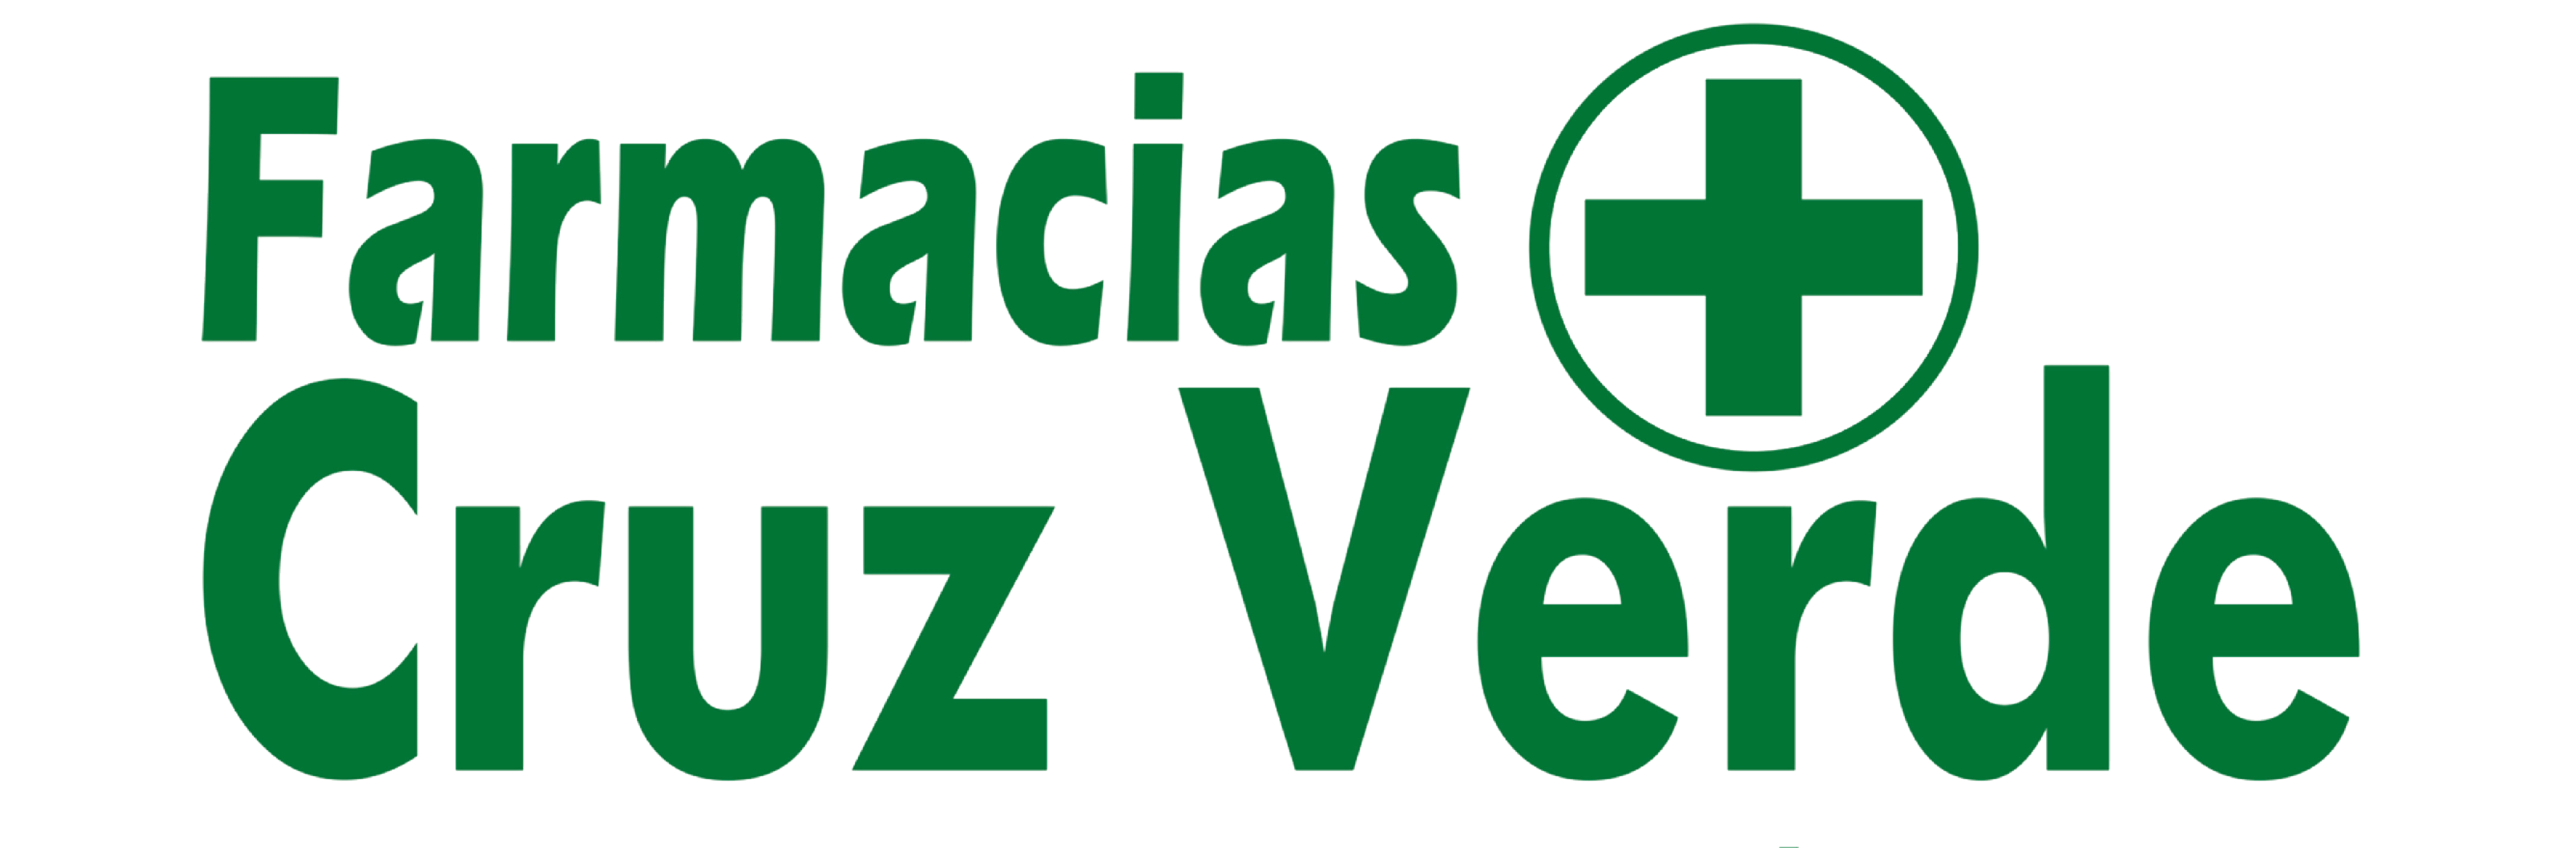 Farmacias Cruz Verde Logo